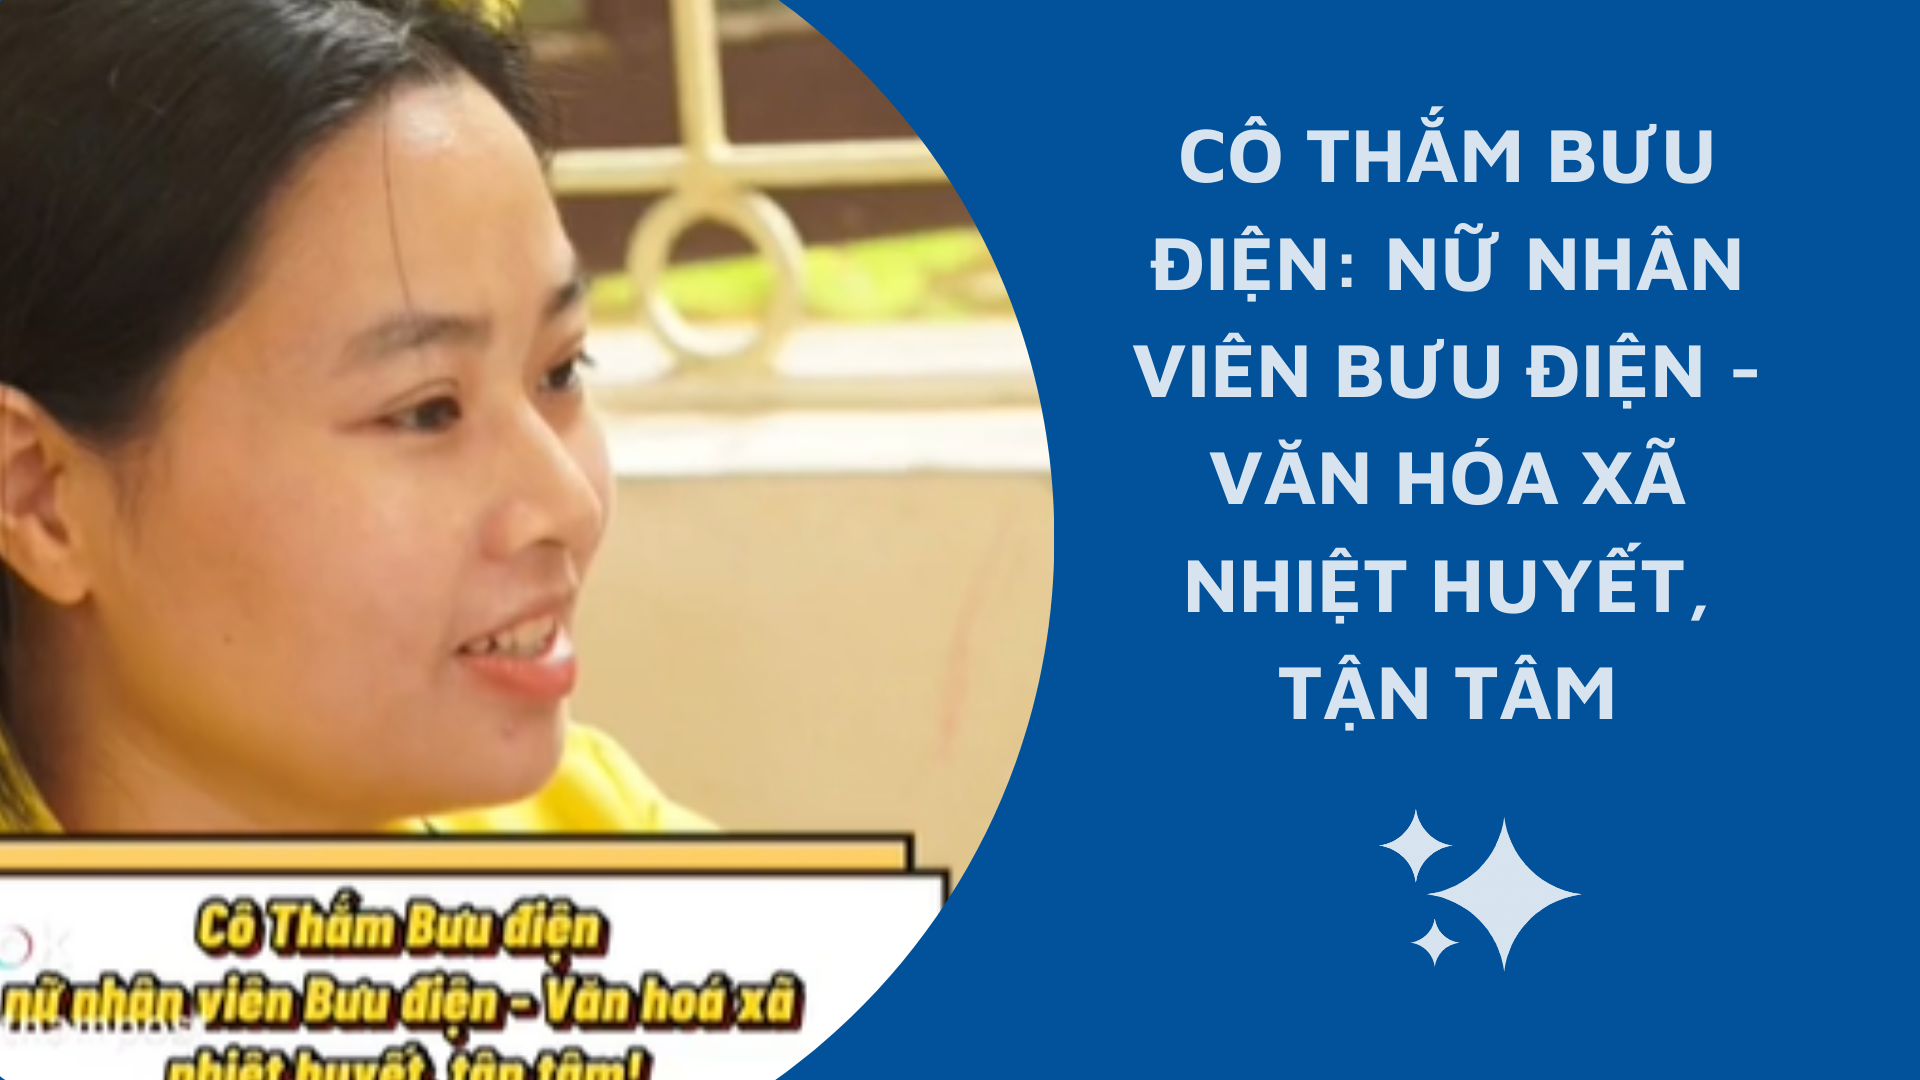 Cover Image for Cô Thắm Bưu Điện: Nữ nhân viên bưu điện – Văn hóa xã nhiệt huyết, tận tâm